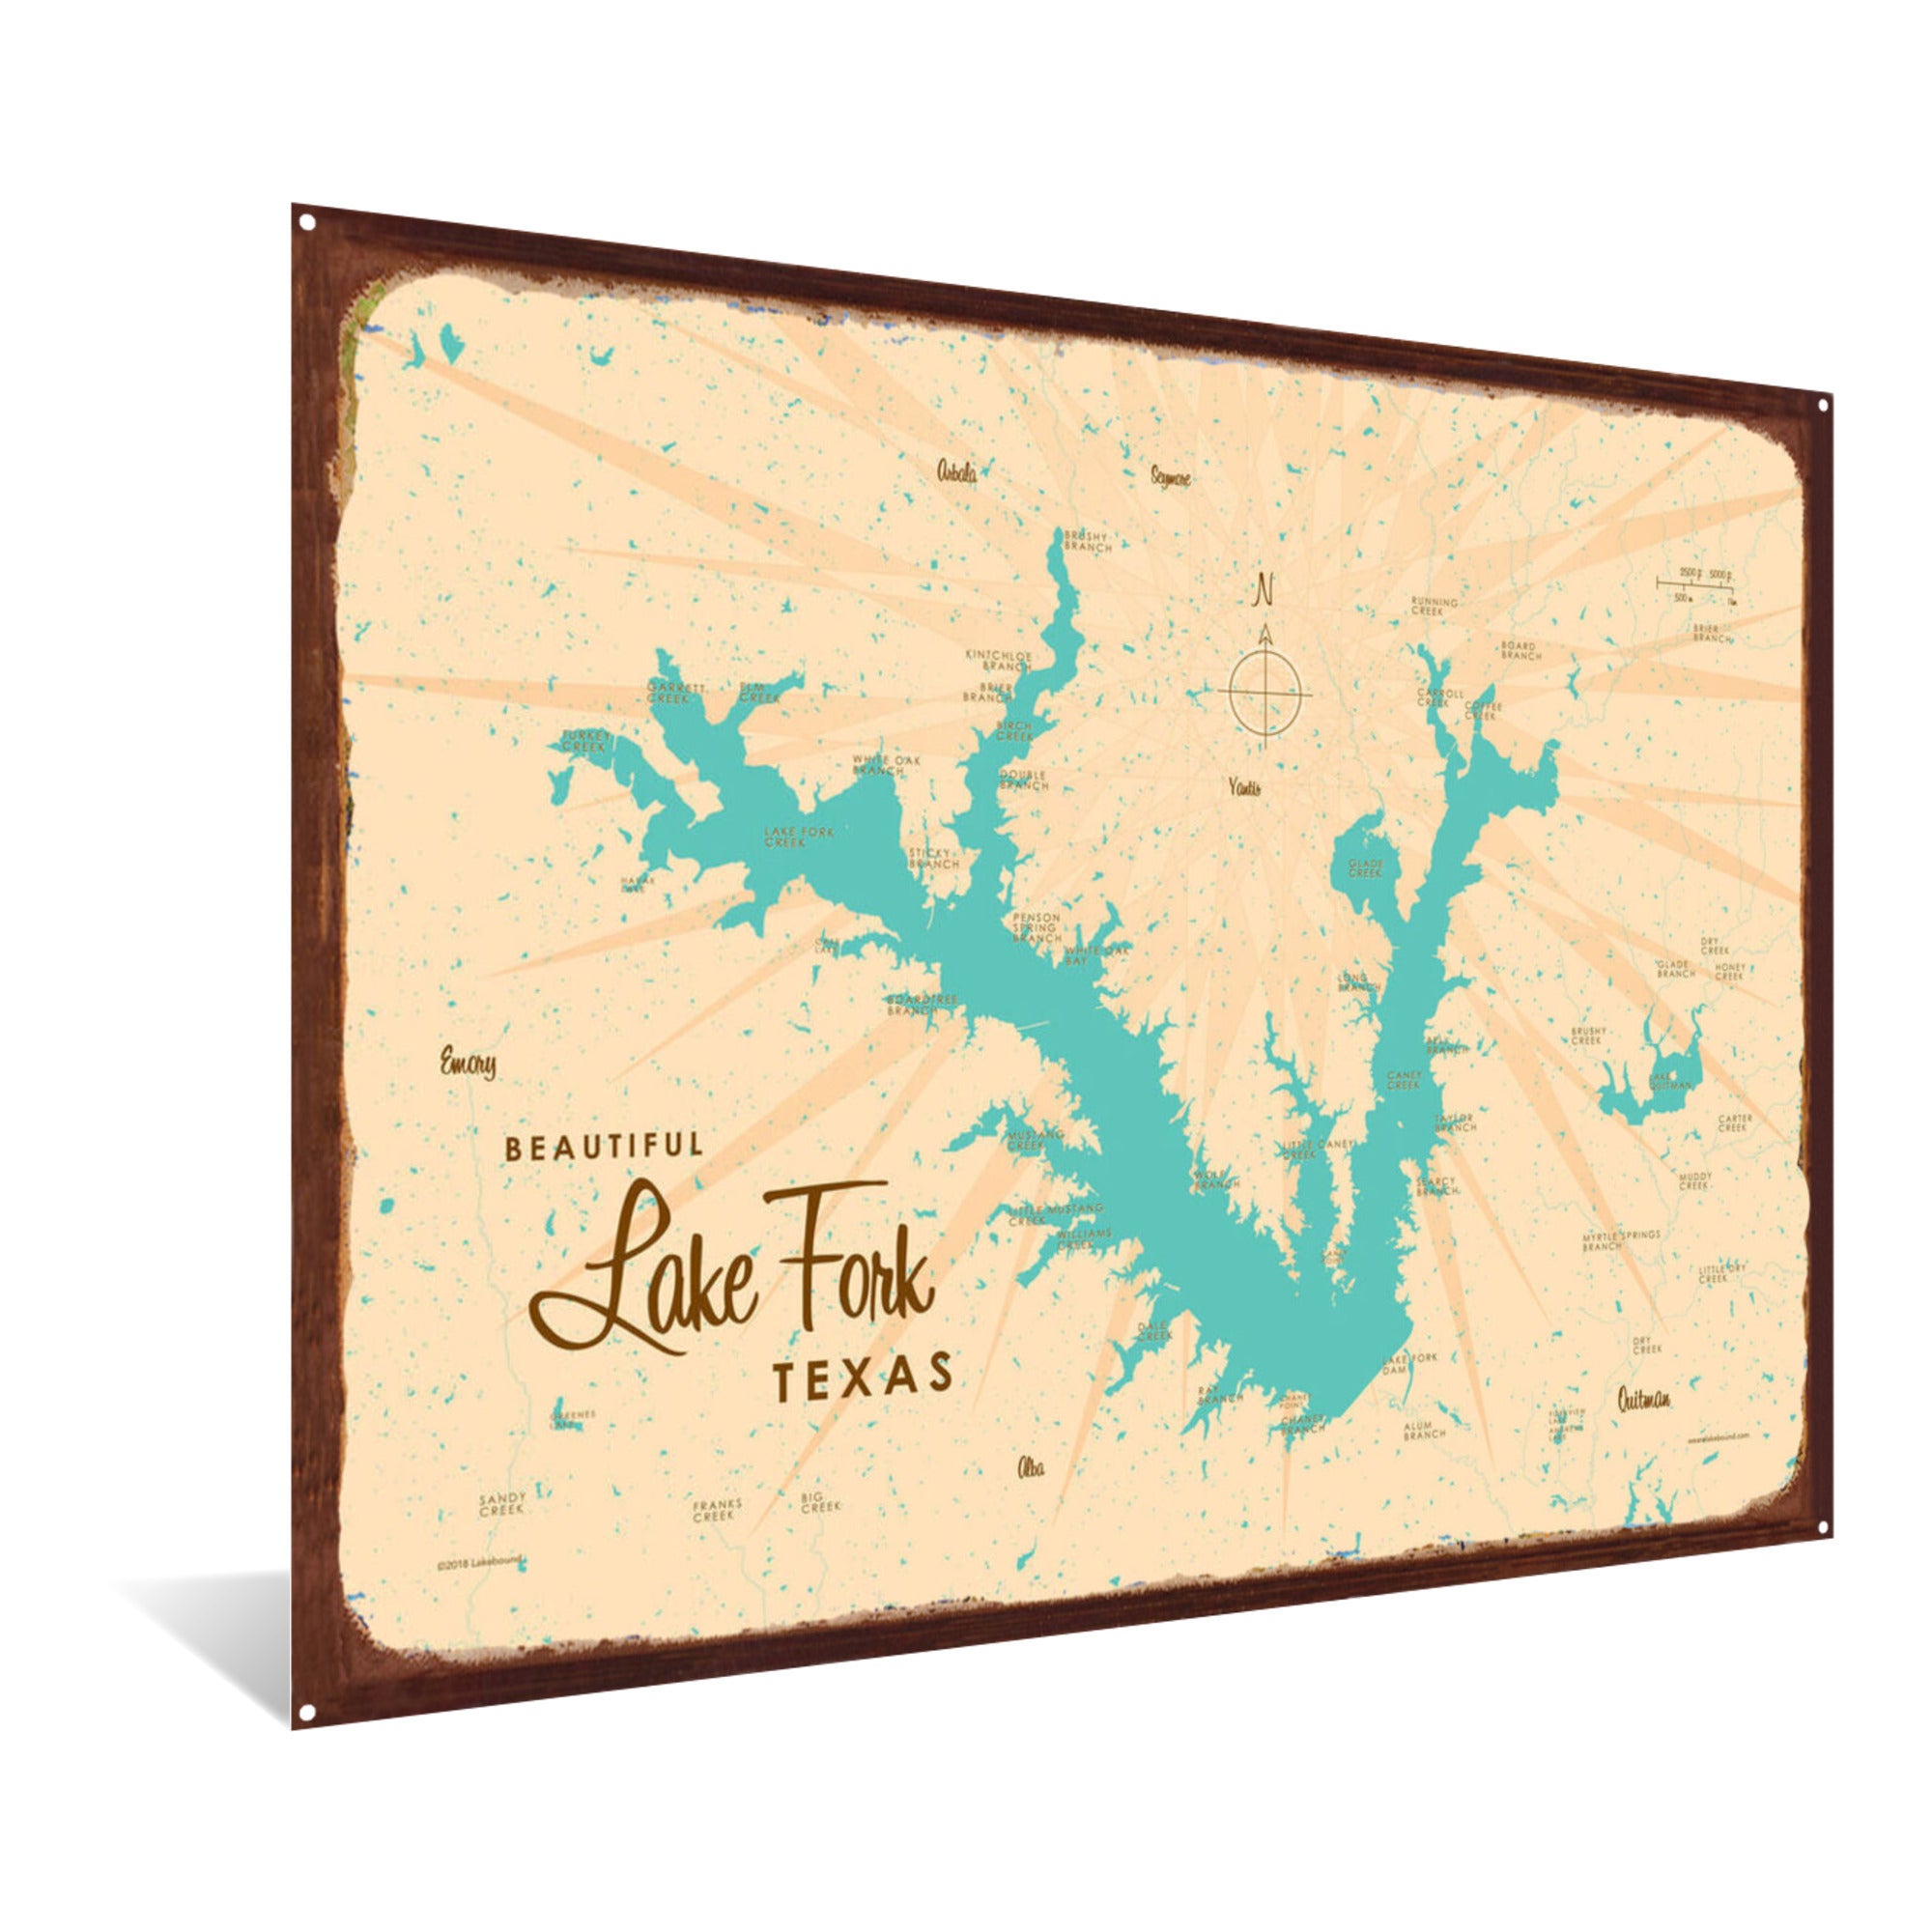 Lake Fork Texas, Rustic Metal Sign Map Art